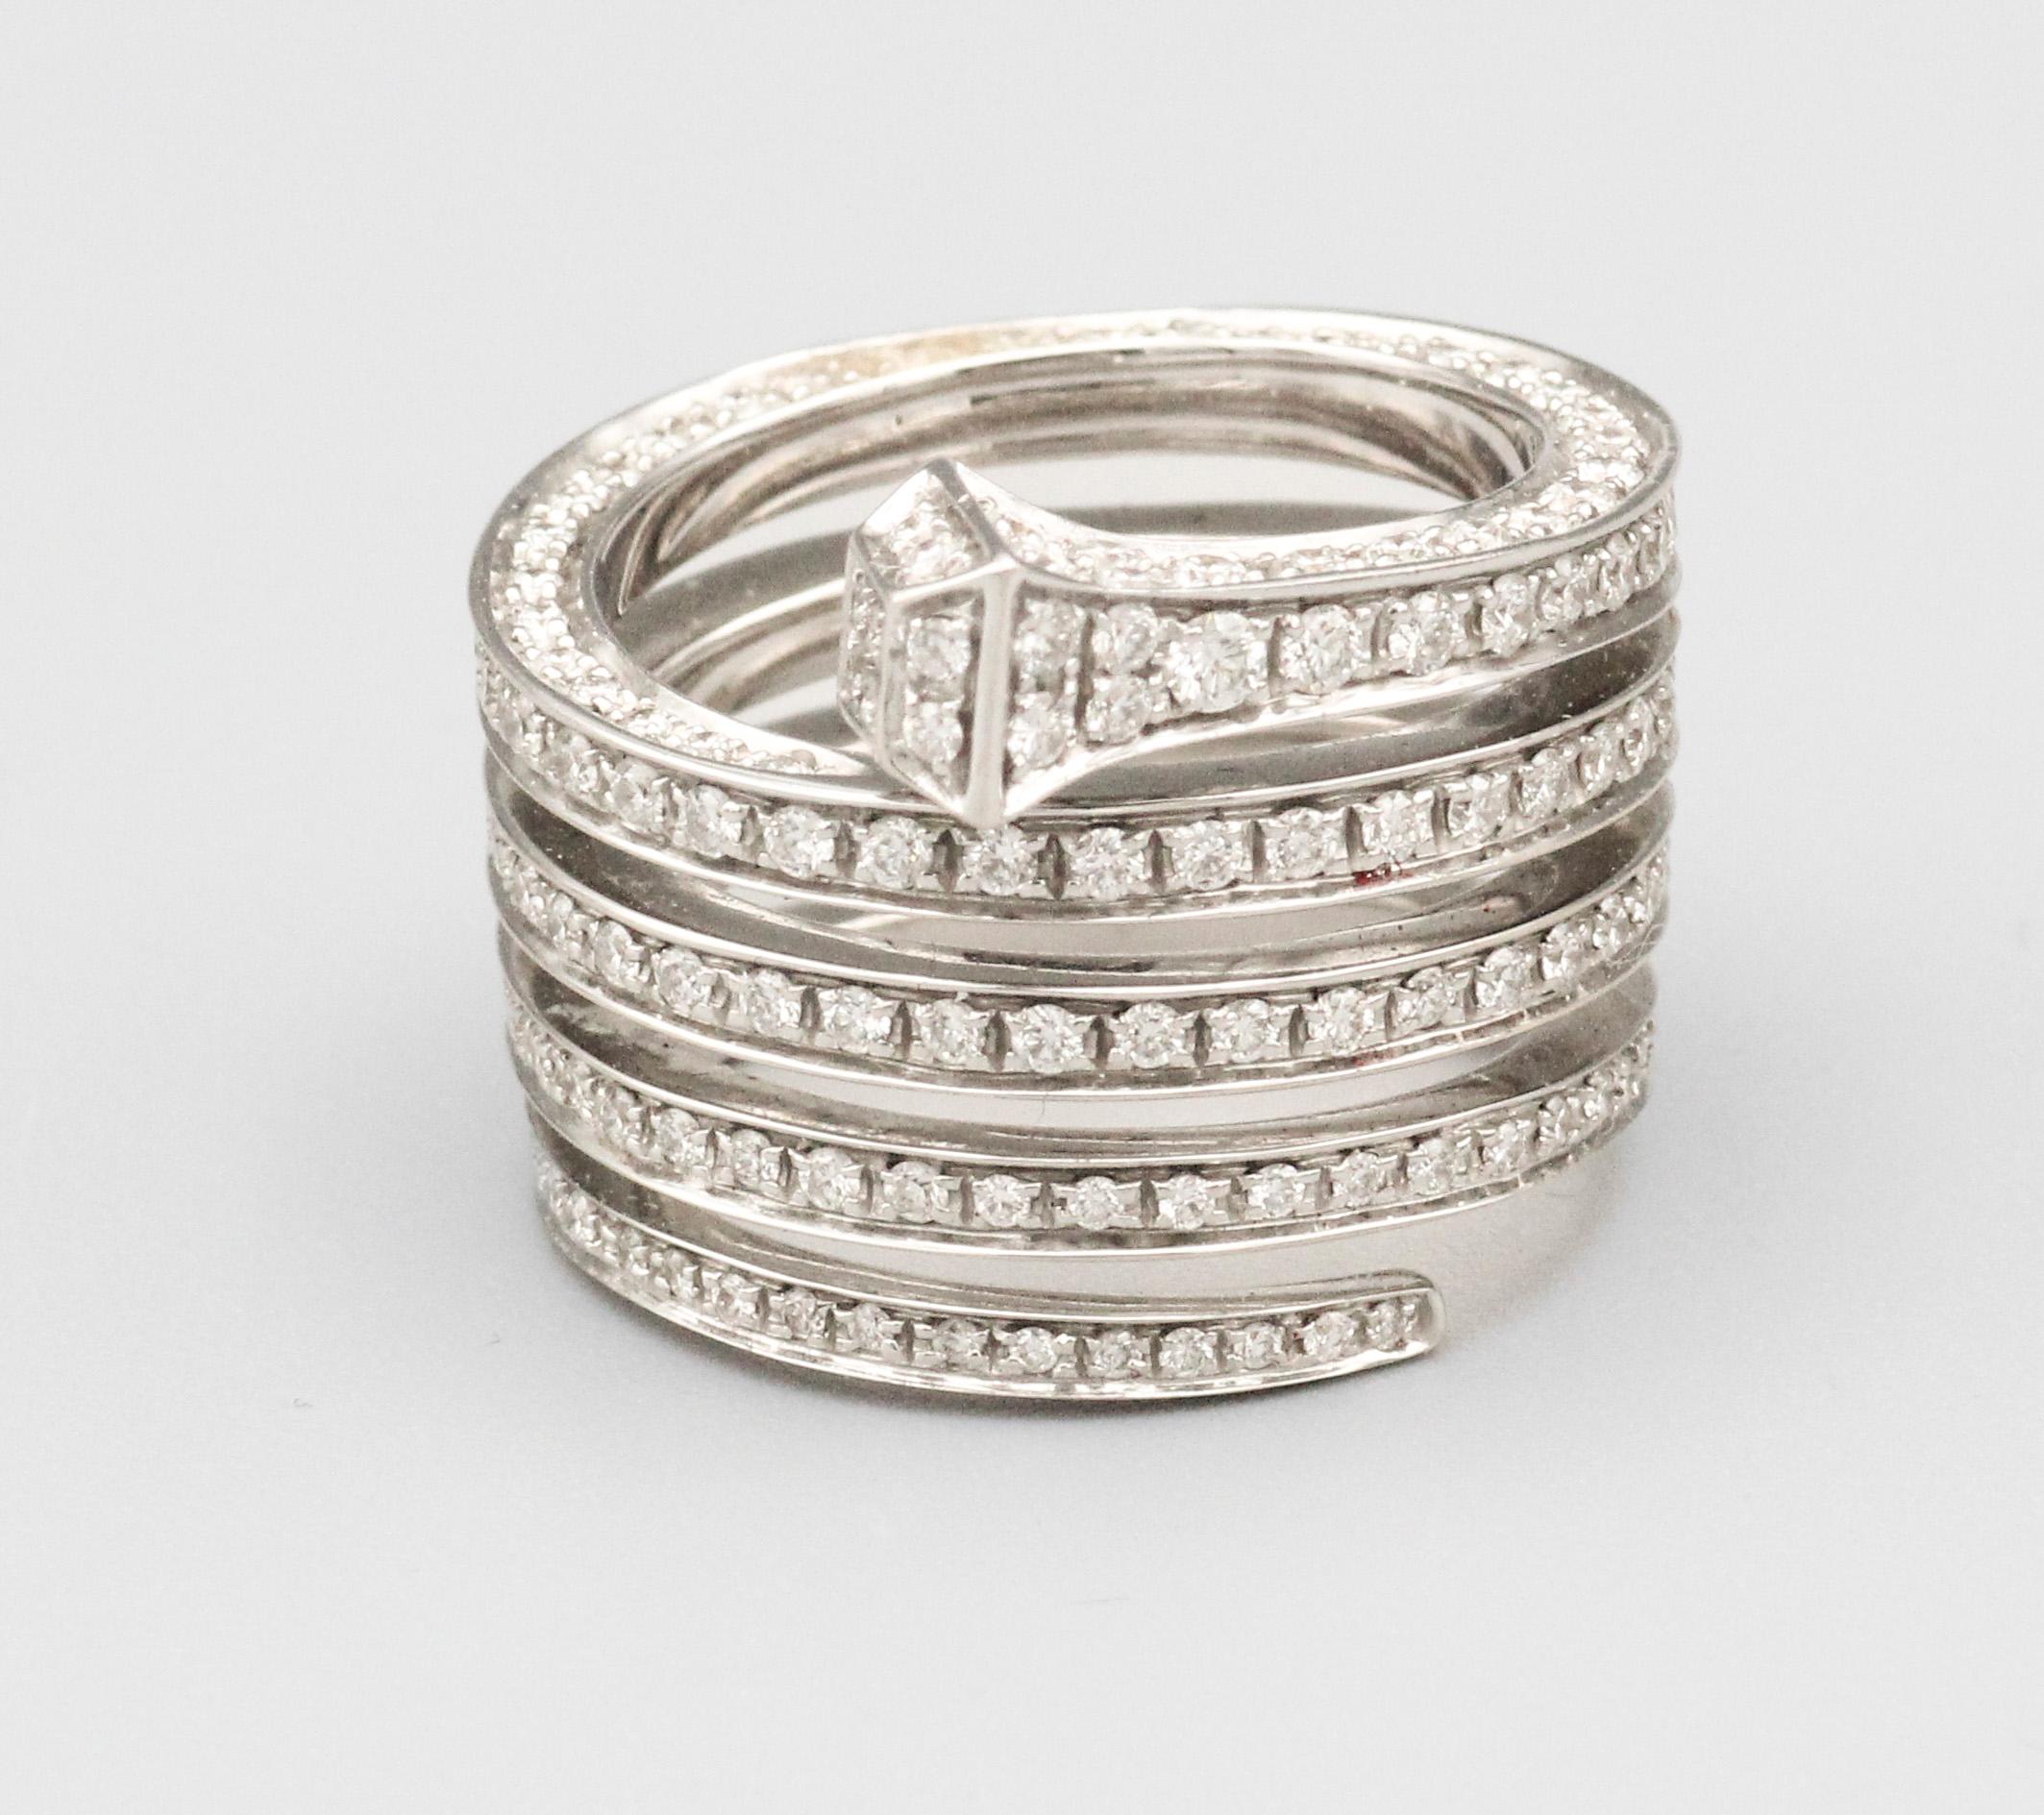 Der Gucci Chiodo Diamond 18K White Gold Wrap Around Nail Ring ist eine fesselnde Mischung aus modernem Design und zeitlosem Luxus. Dieser vom italienischen Modehaus Gucci entworfene Ring ist ein kühner Ausdruck von Individualität und Raffinesse, der